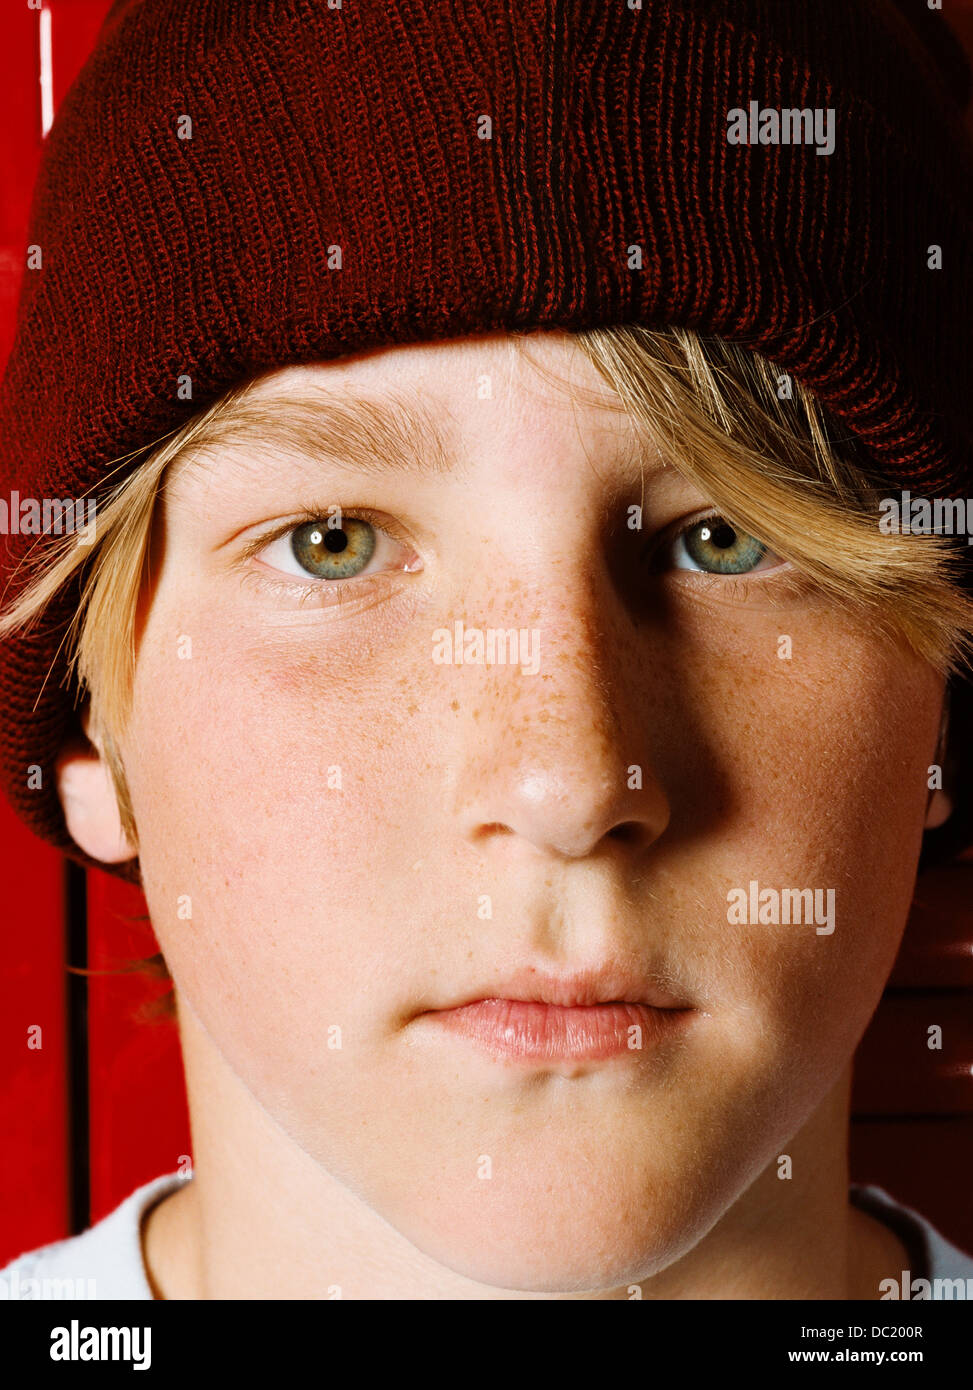 Boy wearing Knit hat in school locker room, portrait Banque D'Images